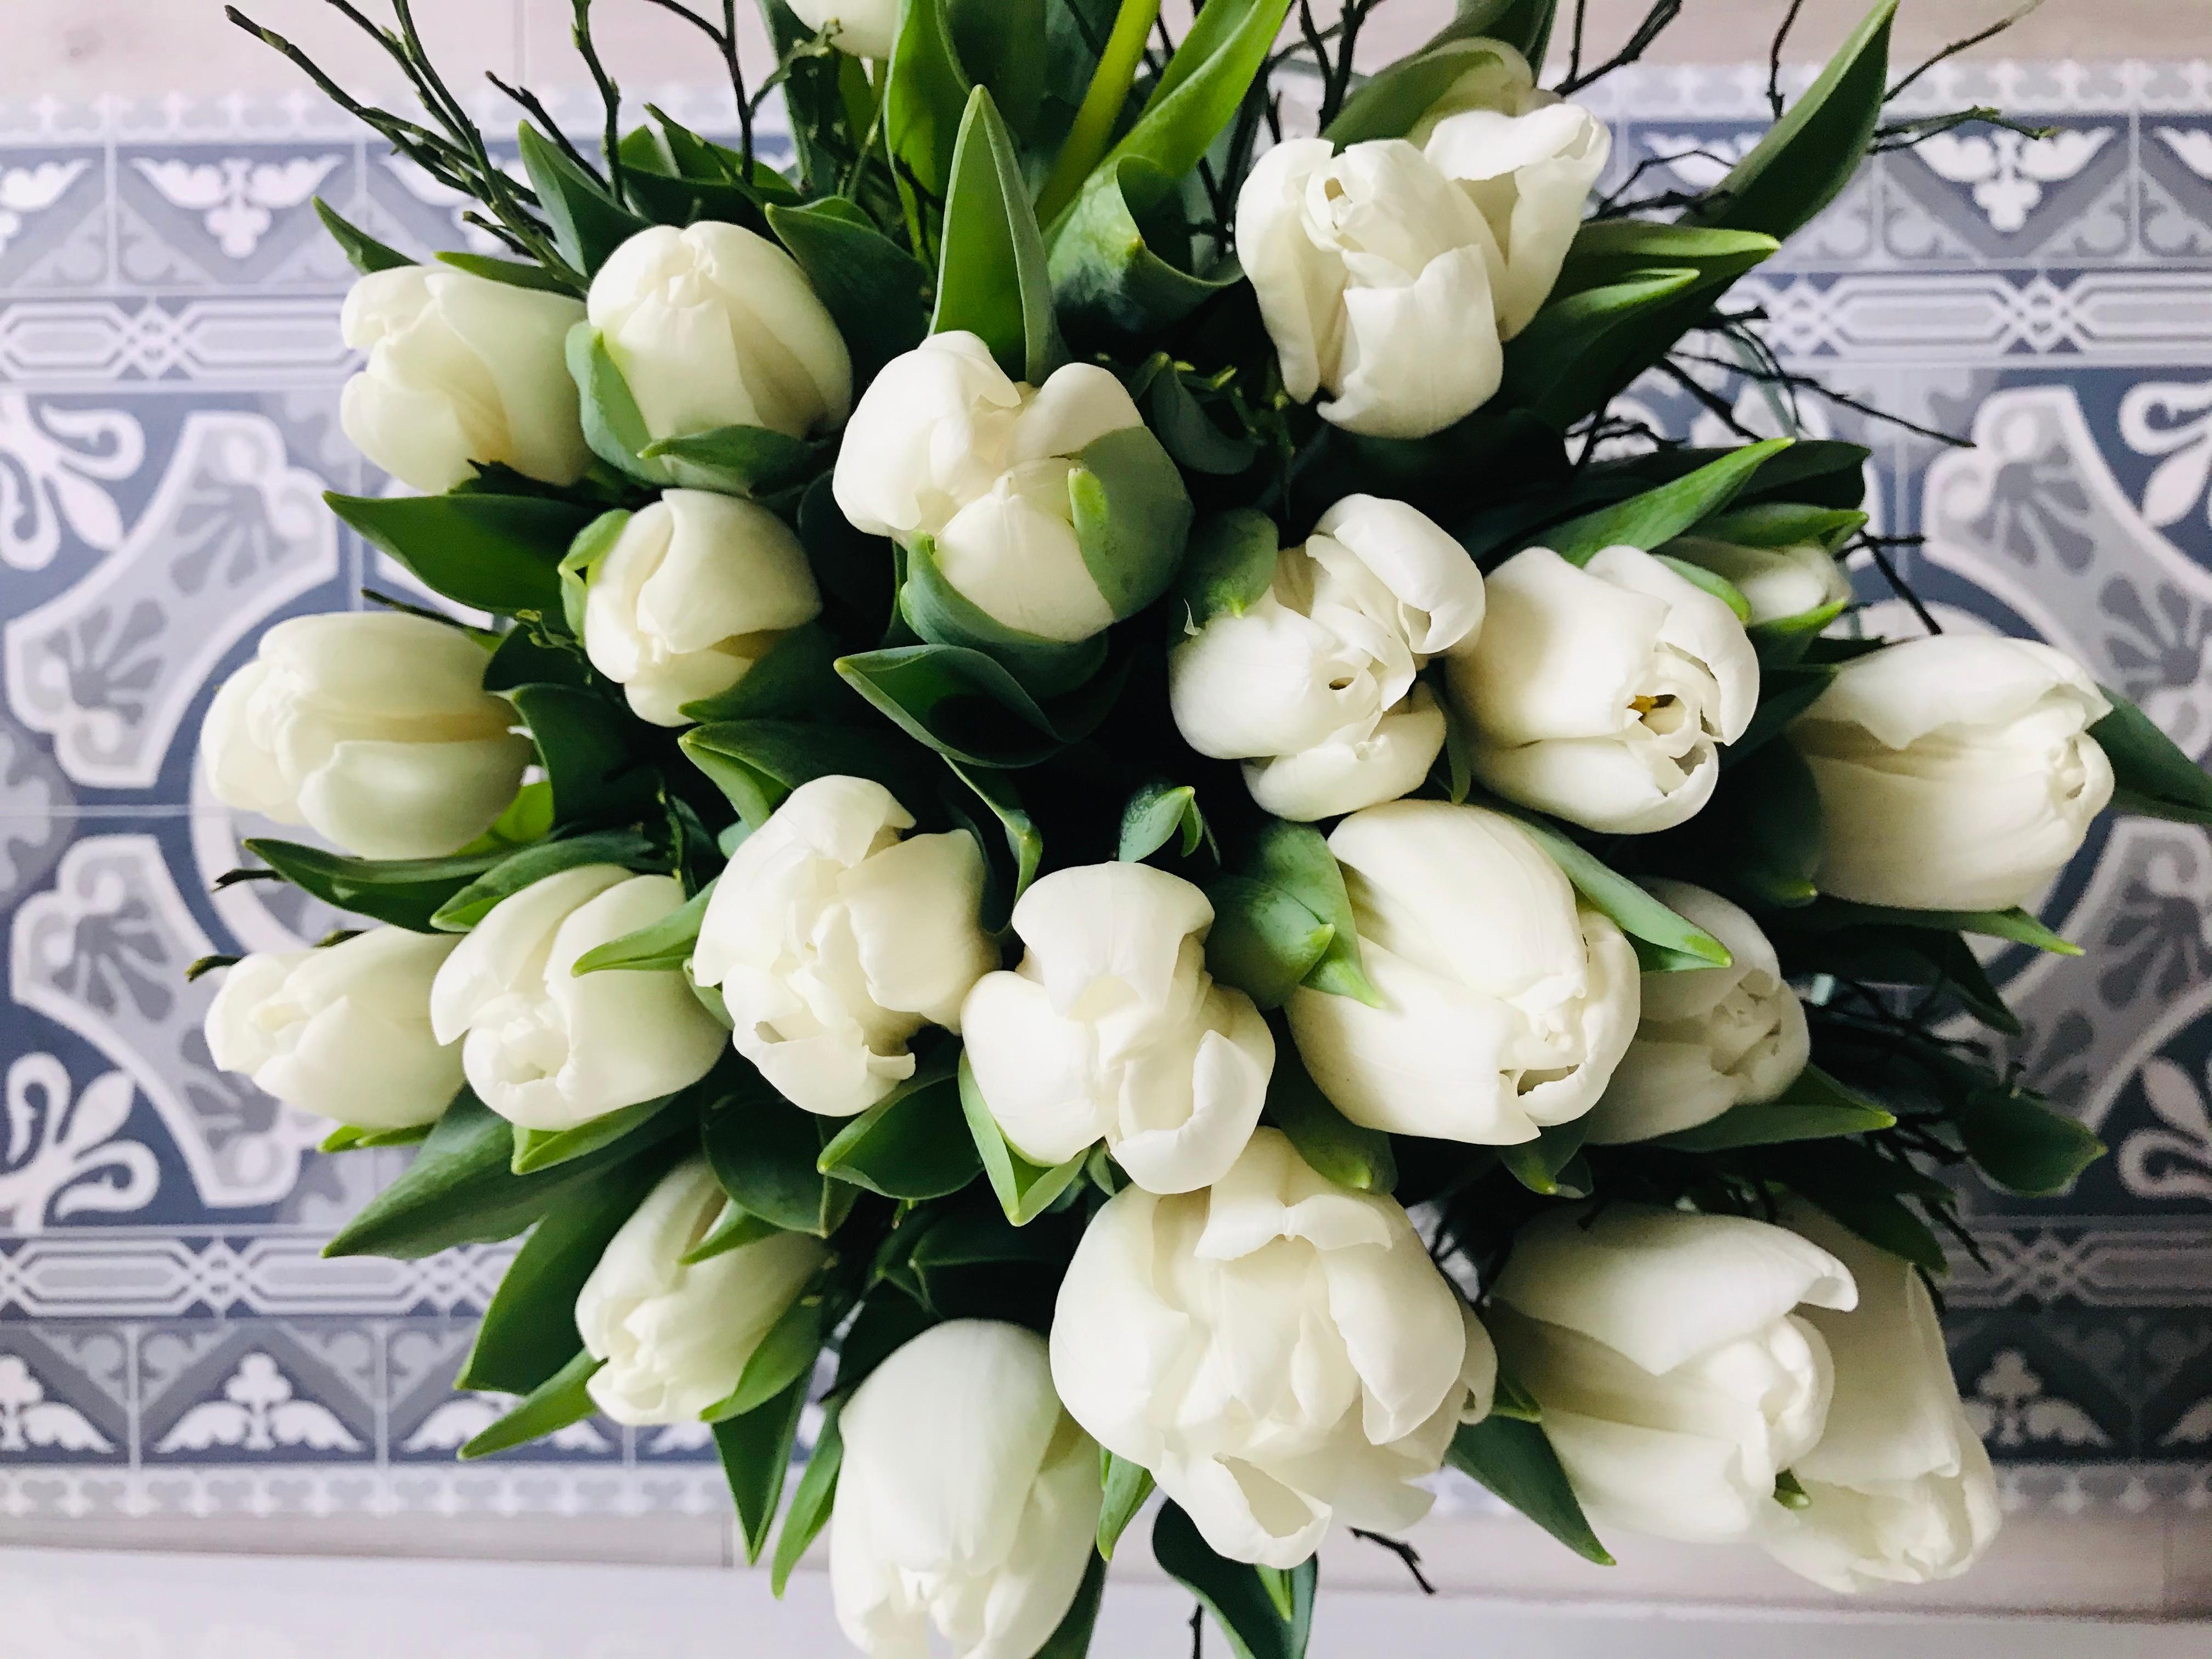 Meine absoluten Lieblingsblumen .. weiße Tulpen 🤍 